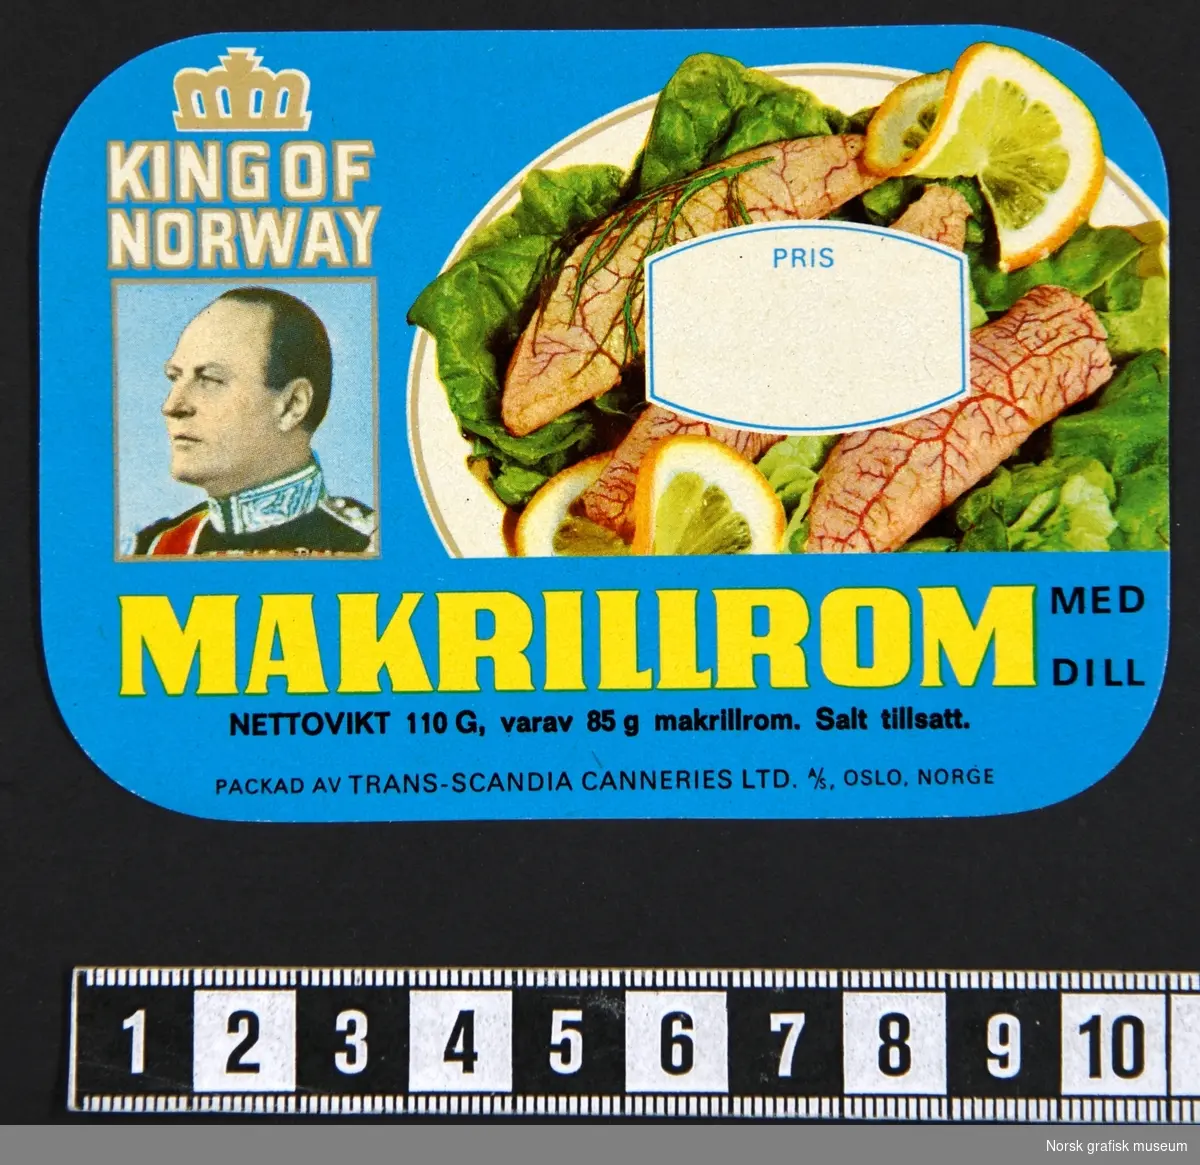 EN bunke med etiketter med blå bakgrunnsfarge og illustrert med et fat dandert med rogn, sitronskiver og salat. 
Under varenavnet er et bilde av Kong Olav. 

"Makrillrom med dill"